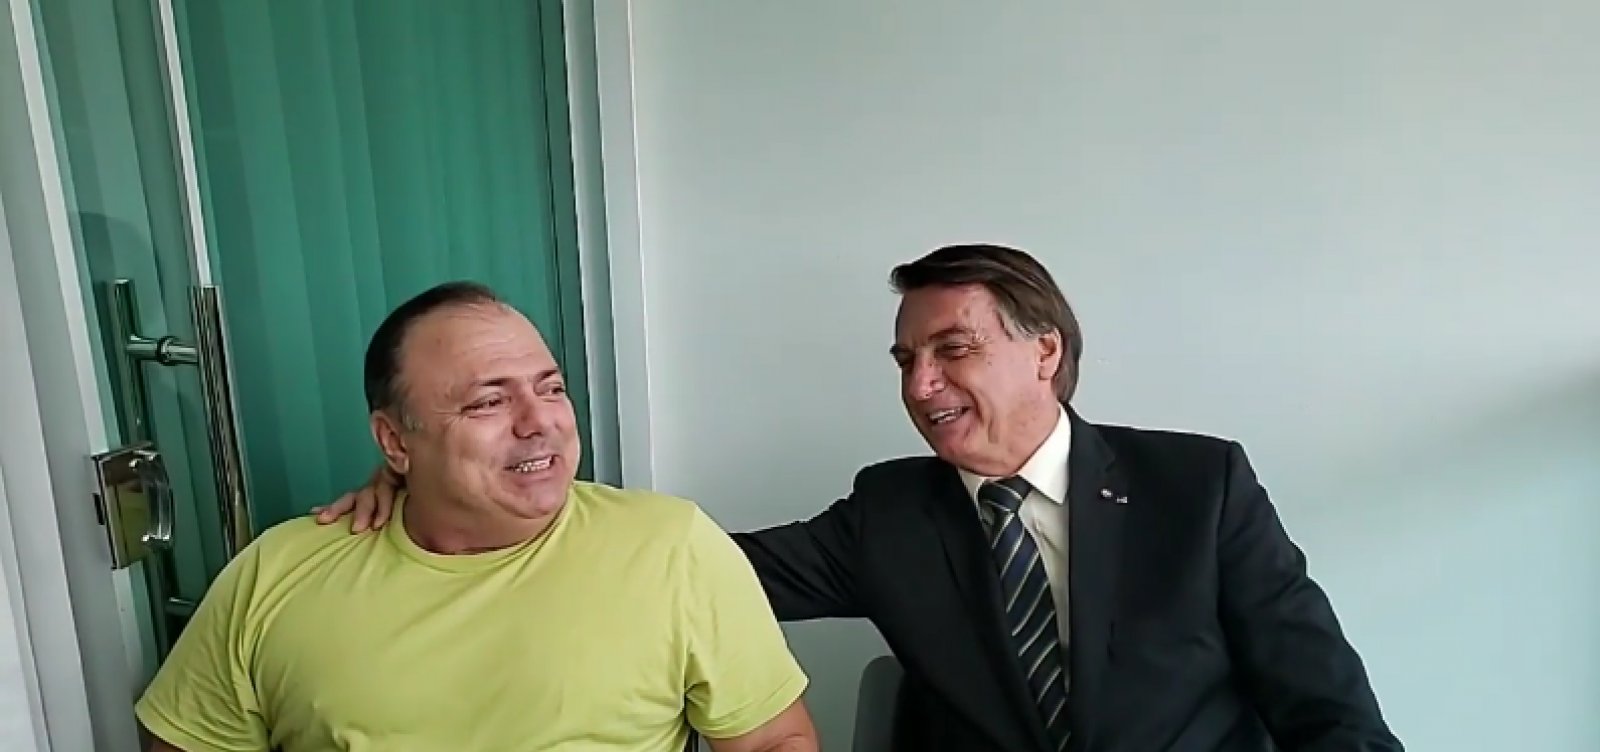 'É simples assim: um manda e outro obedece. Mas a gente tem carinho', diz Pazuello ao lado de Bolsonaro